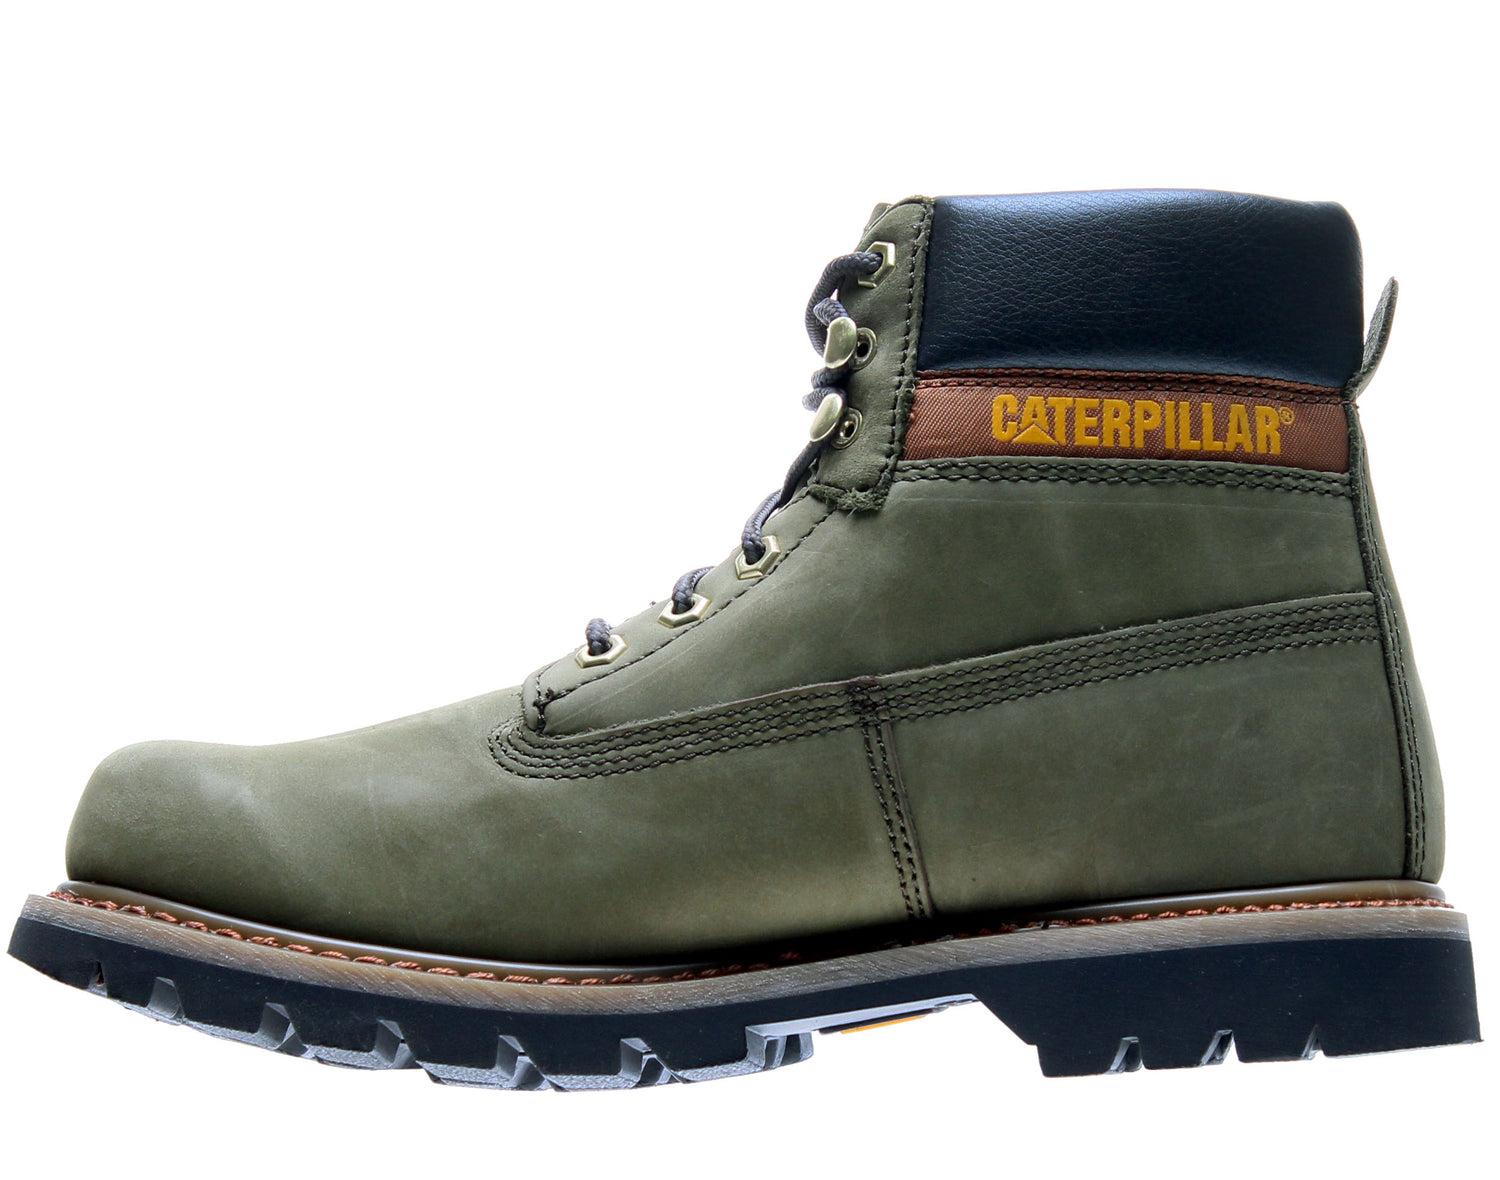 Caterpillar Colorado 6-Inch Men's Boots